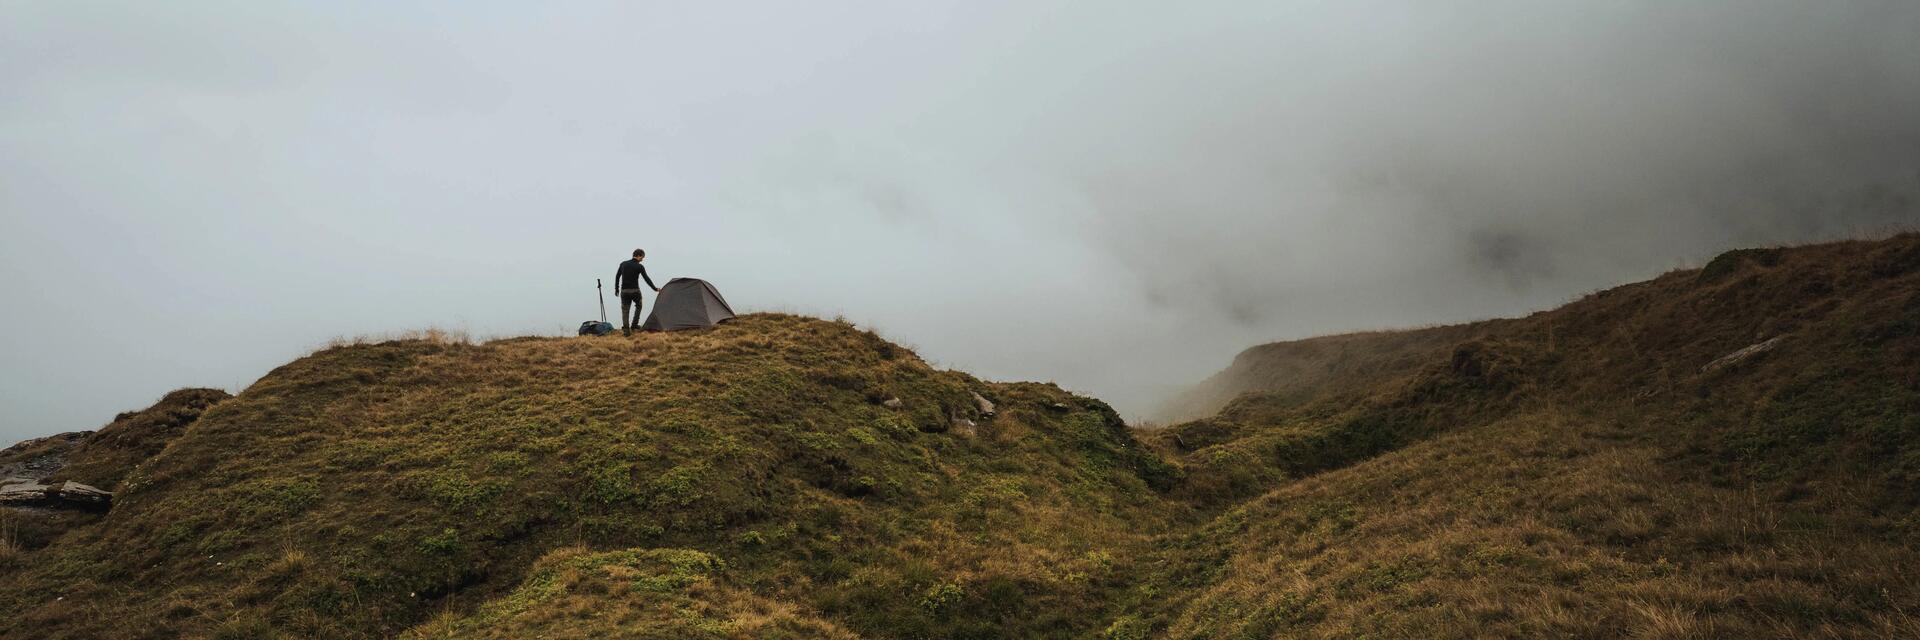 Mężczyzna stojący obok rozłożonego w plenerze namiotu podczas burzy